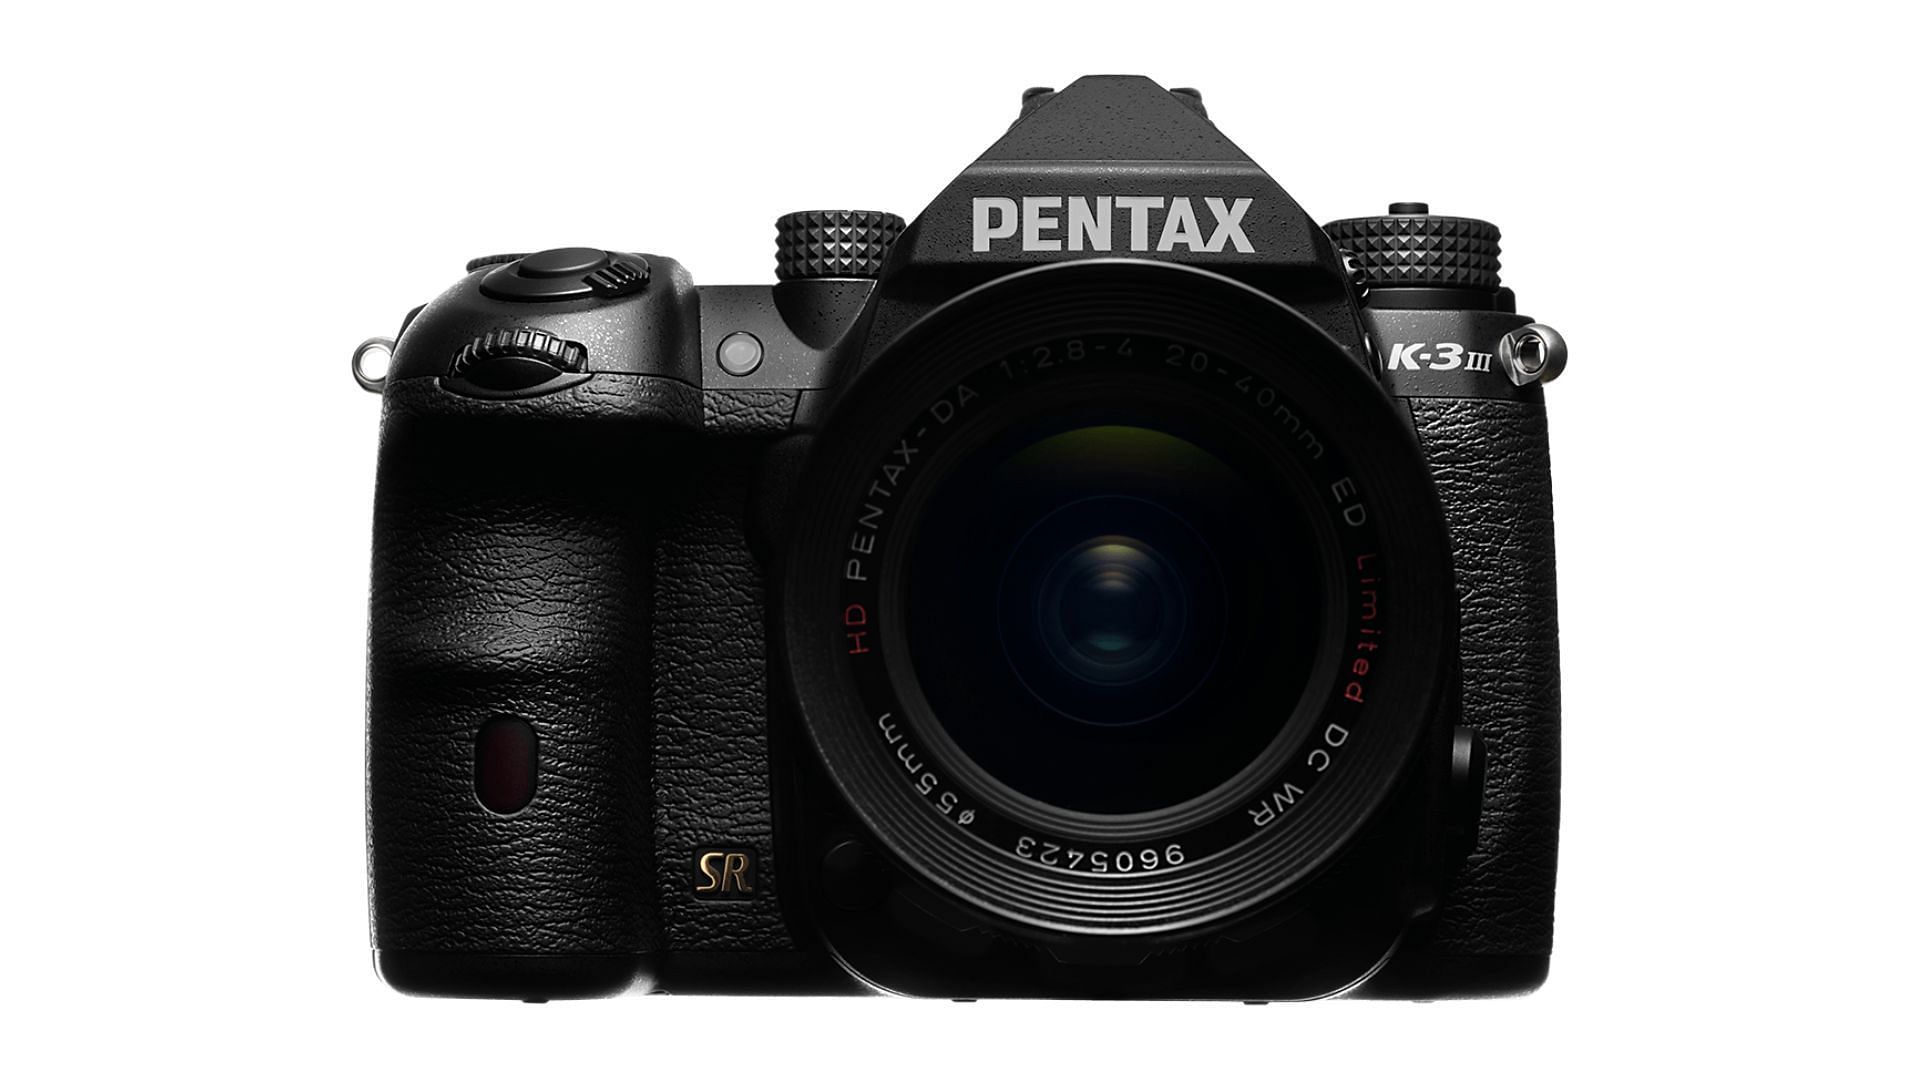 Pentax K-3 Mark III (Image via Pentax)